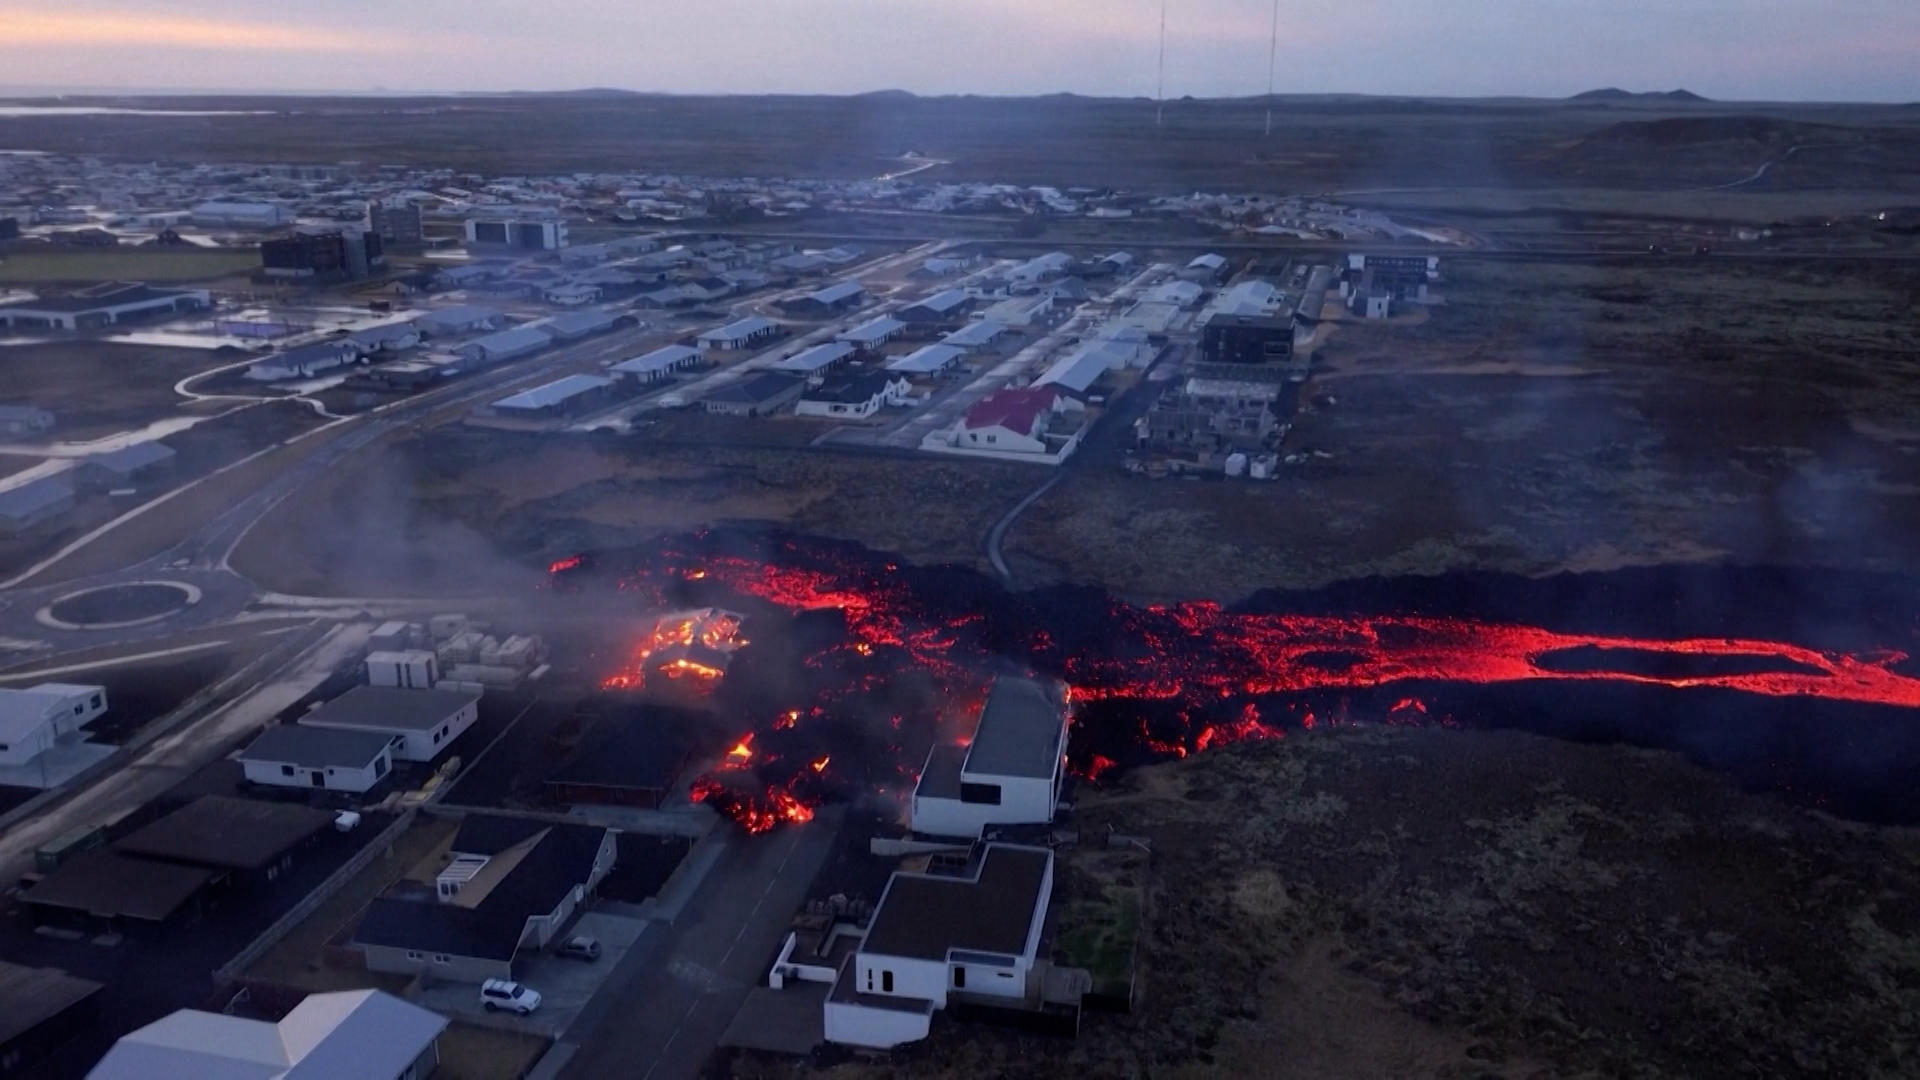 Grindavik stopniowo znika w strumieniu lawy powstałej w wyniku erupcji wulkanu na Islandii